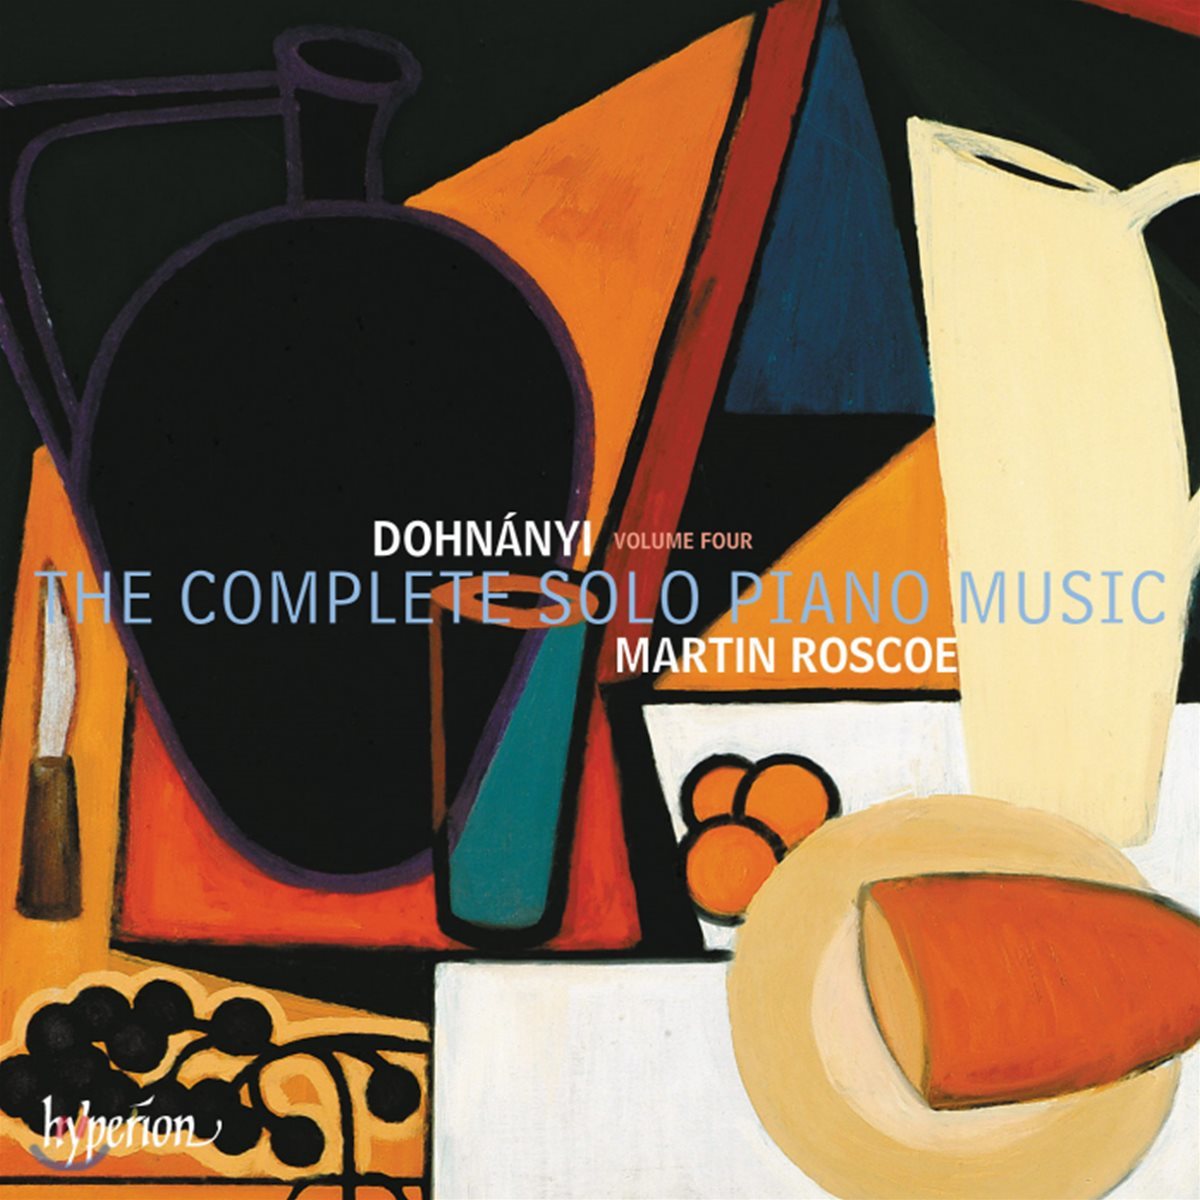 Martin Roscoe 도흐나니: 솔로 피아노 작품 4집 (Erno Dohnanyi: The Complete Solo Piano Music, Vol. 4)